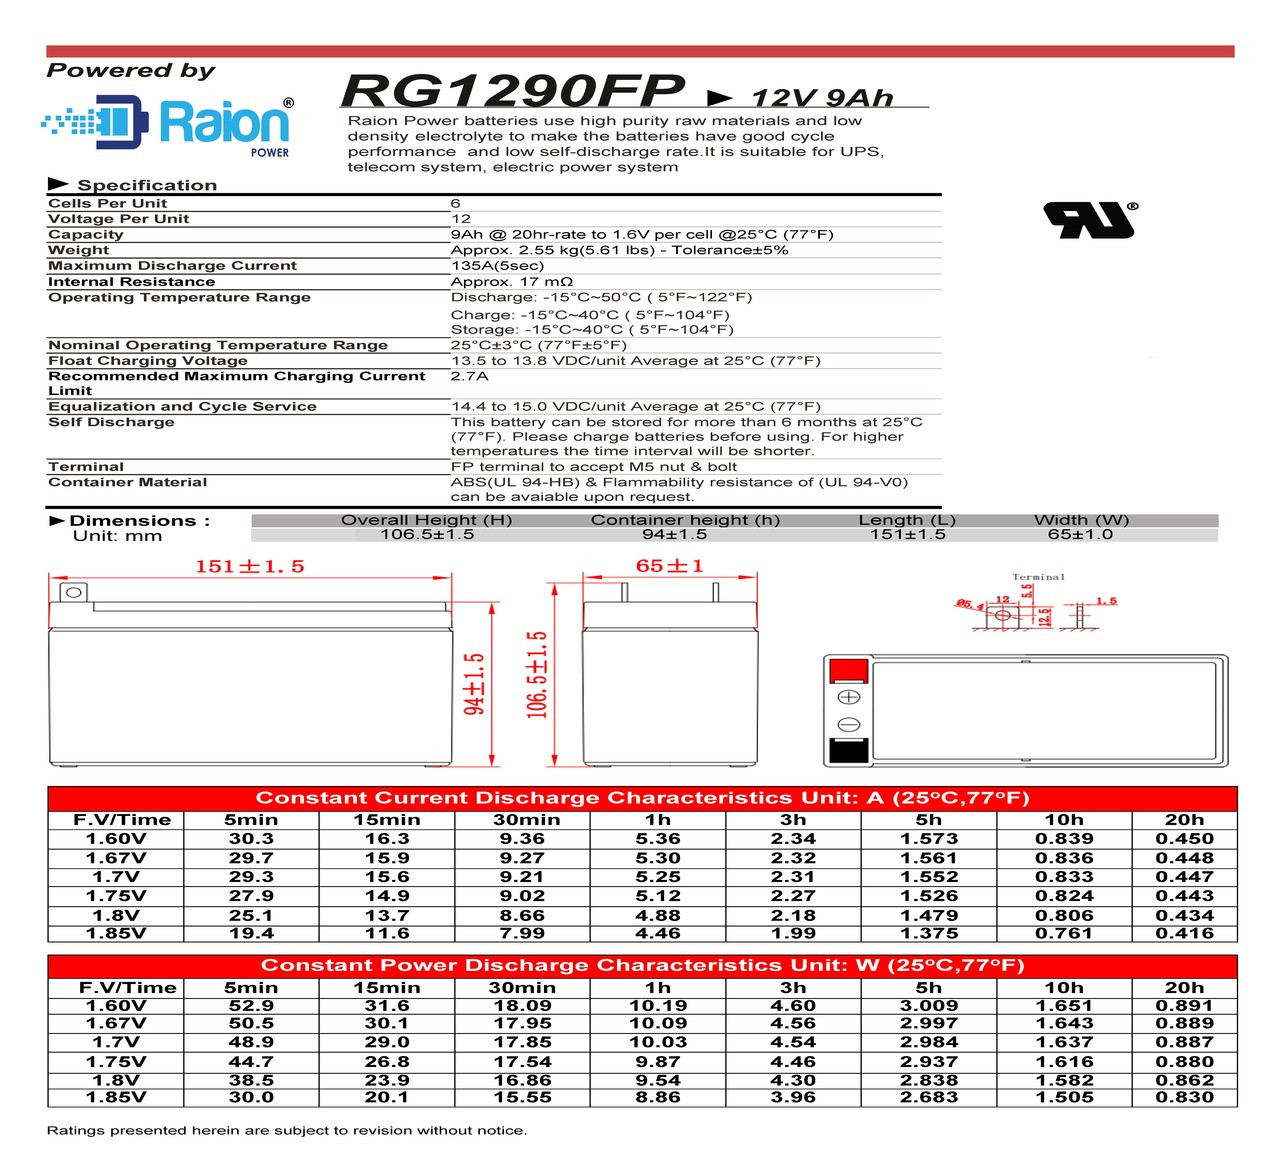 Raion Power 12V 9Ah Battery Data Sheet for Stanley J6BS 300 Amp